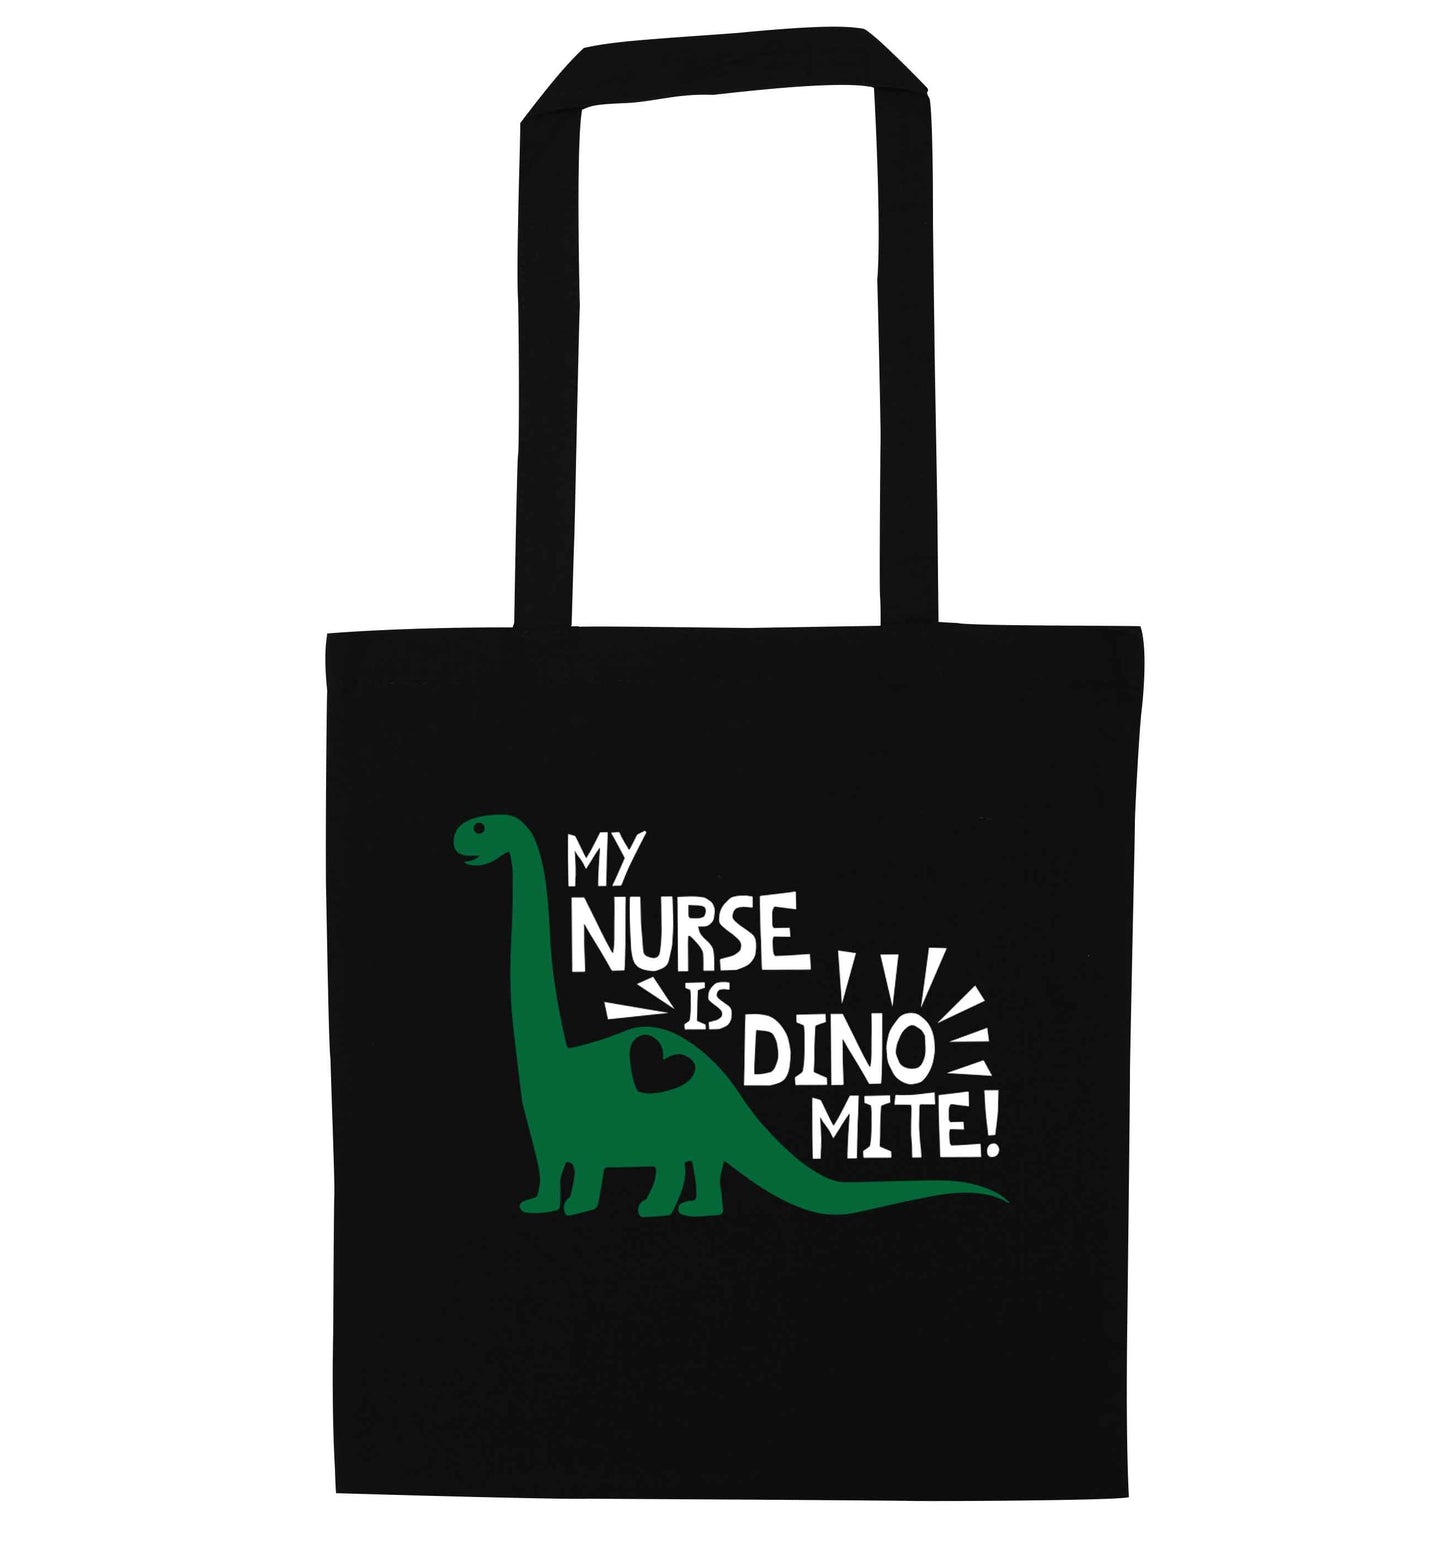 My nurse is dinomite! black tote bag